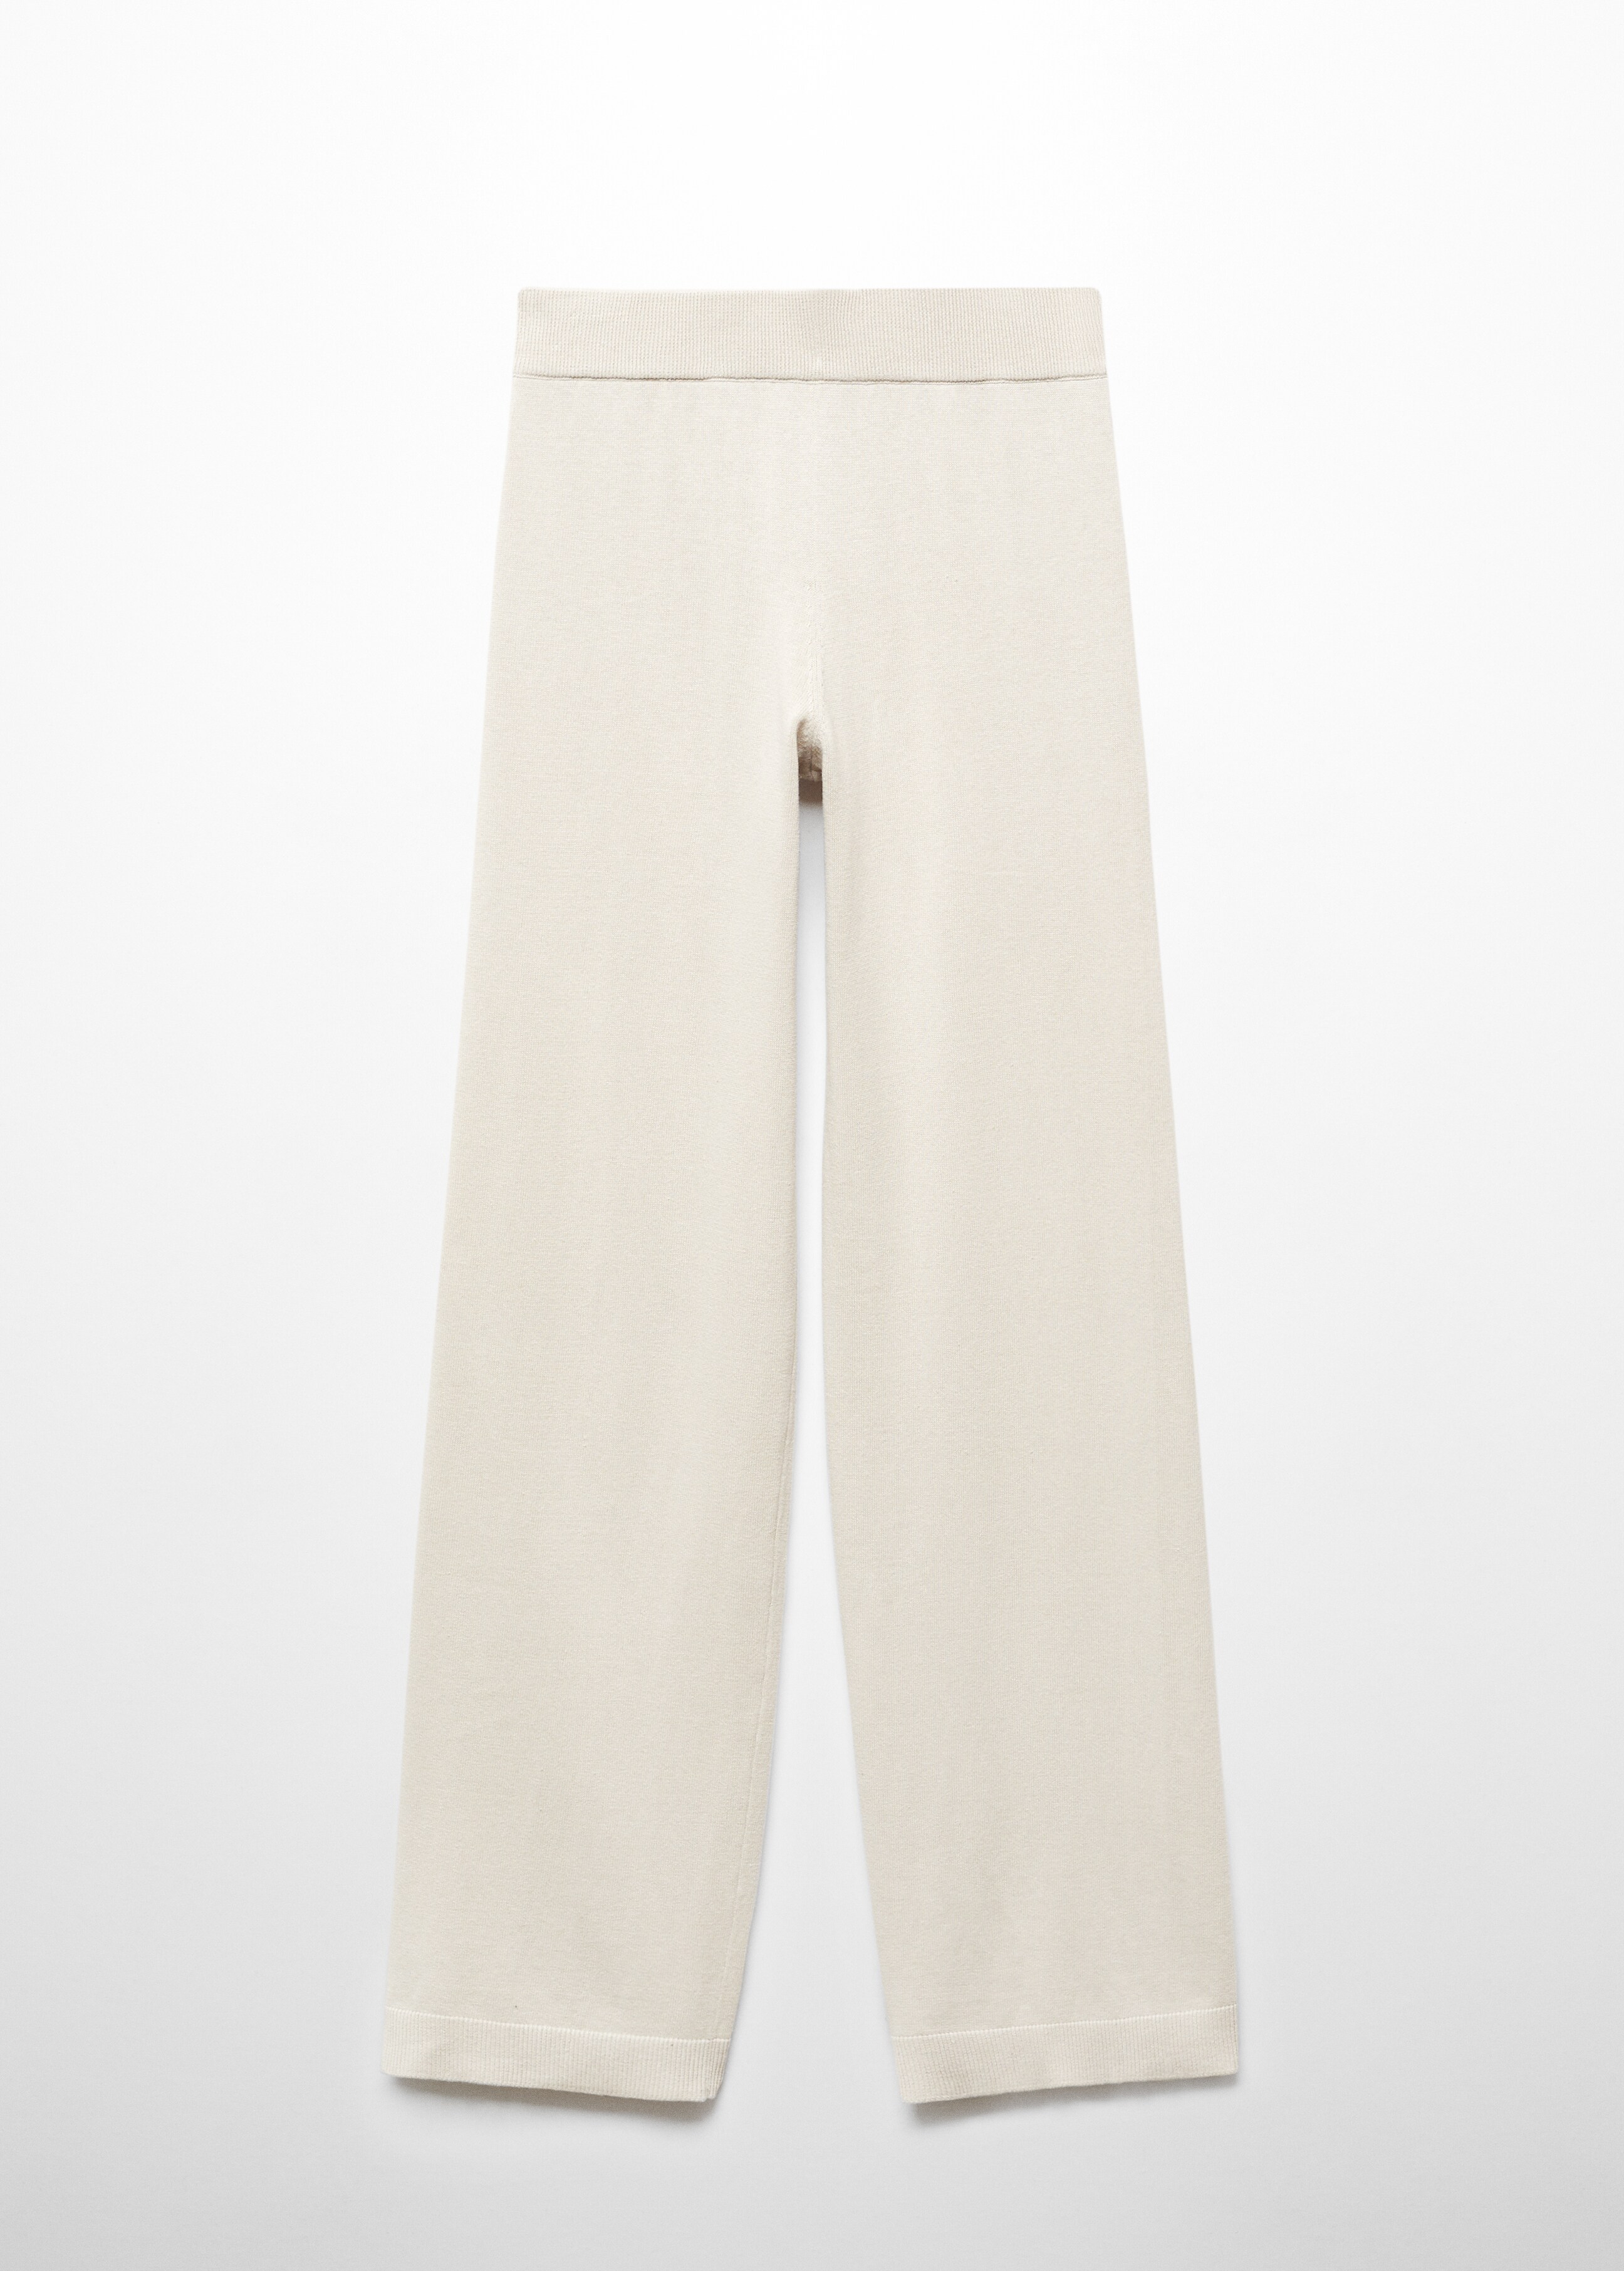 Pantalon pyjama wideleg coton et lin - Article sans modèle